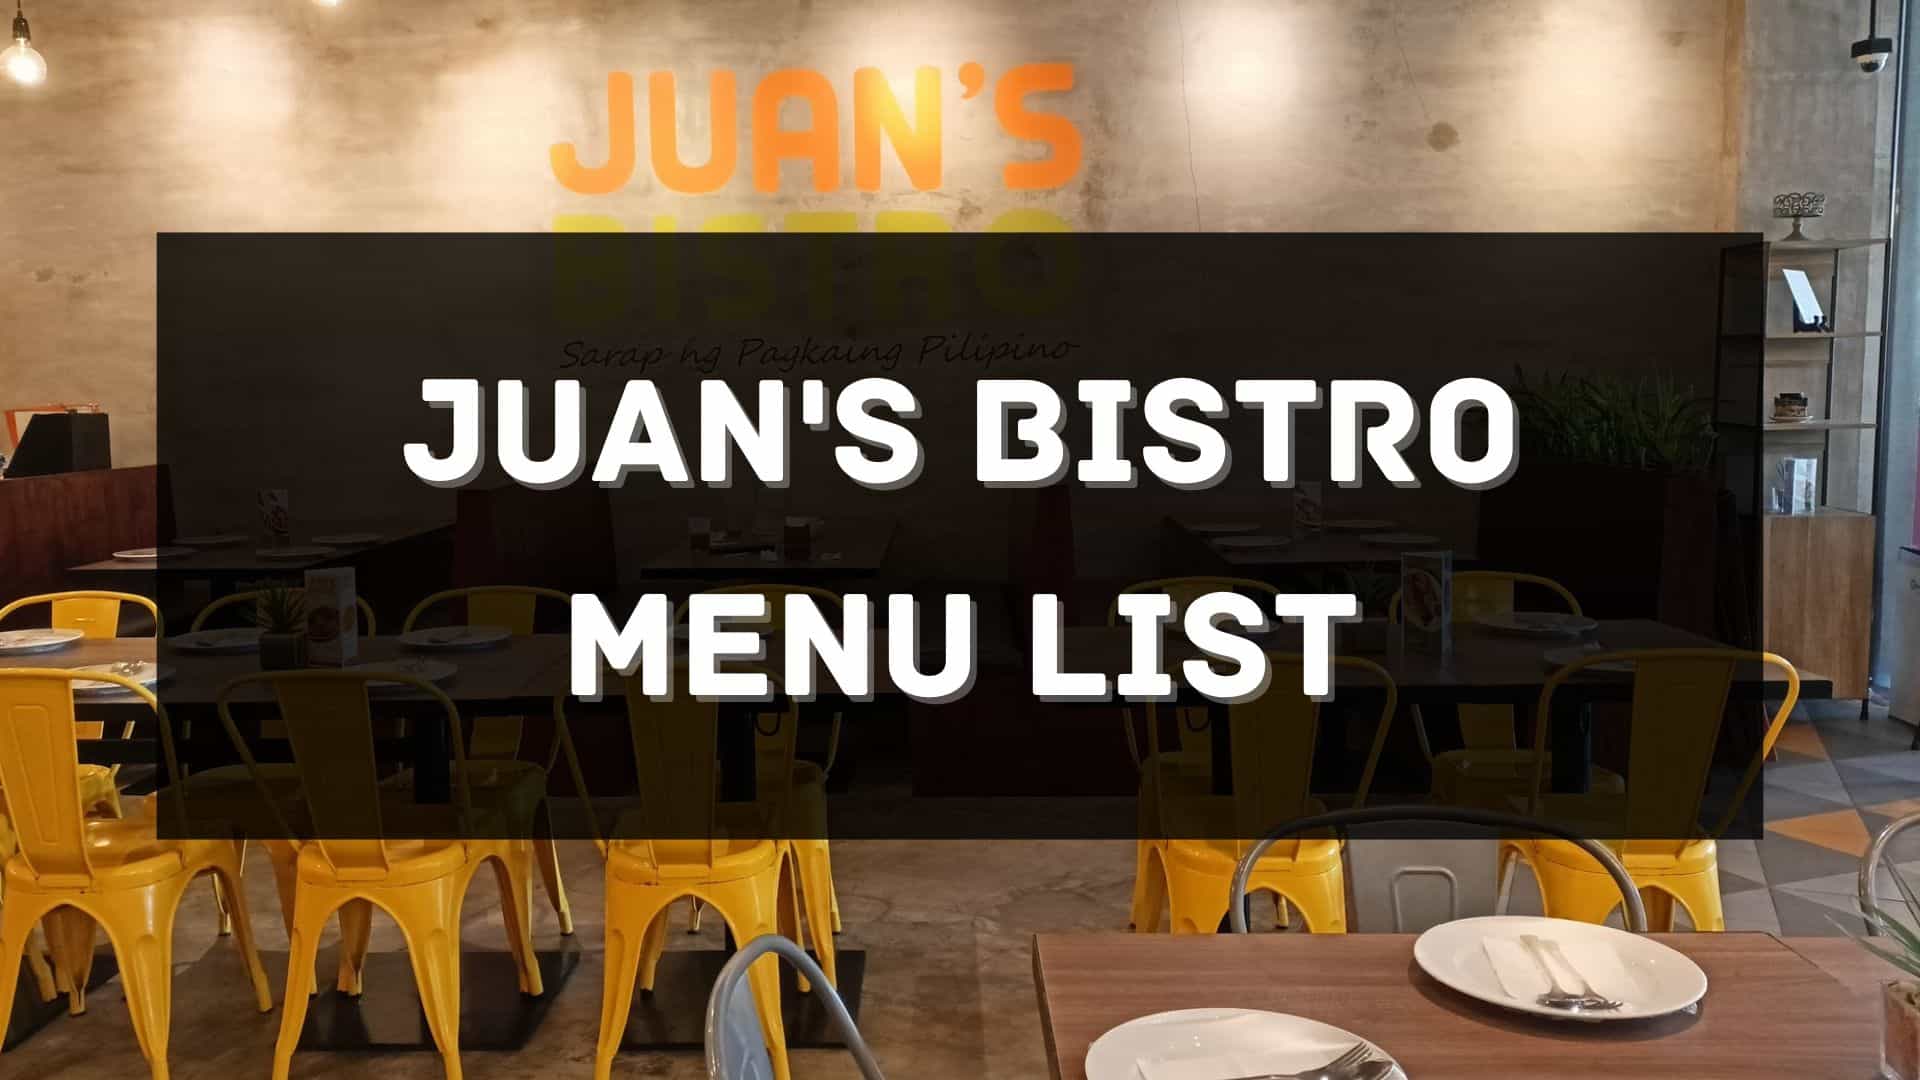 juan's bistro menu prices philippines